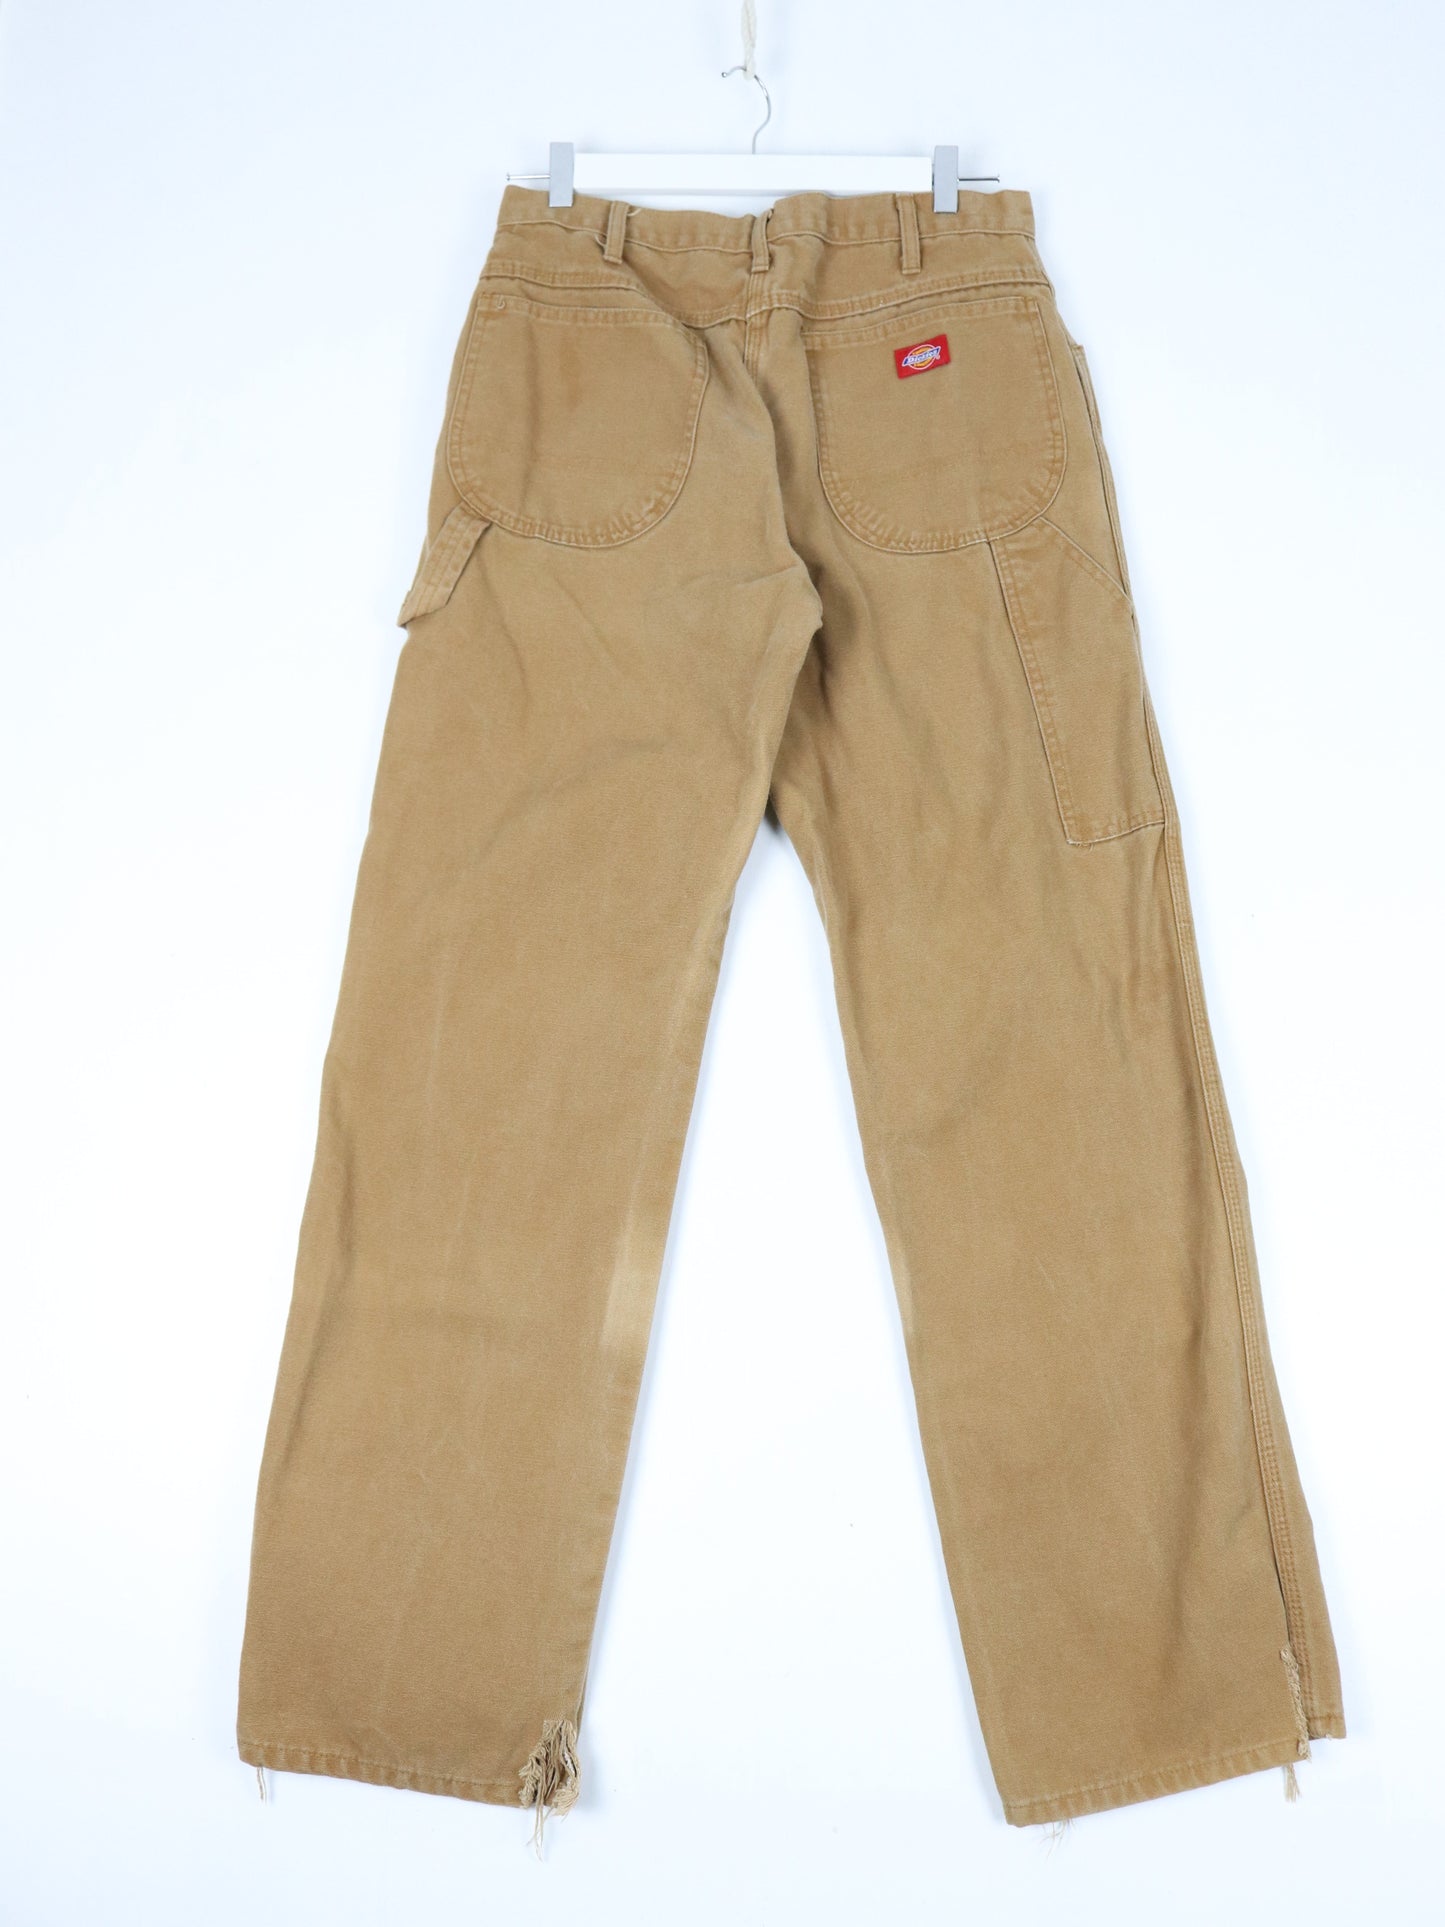 Dickies Pants Fits Mens 30 x 31 Brown Work Wear Carpenters